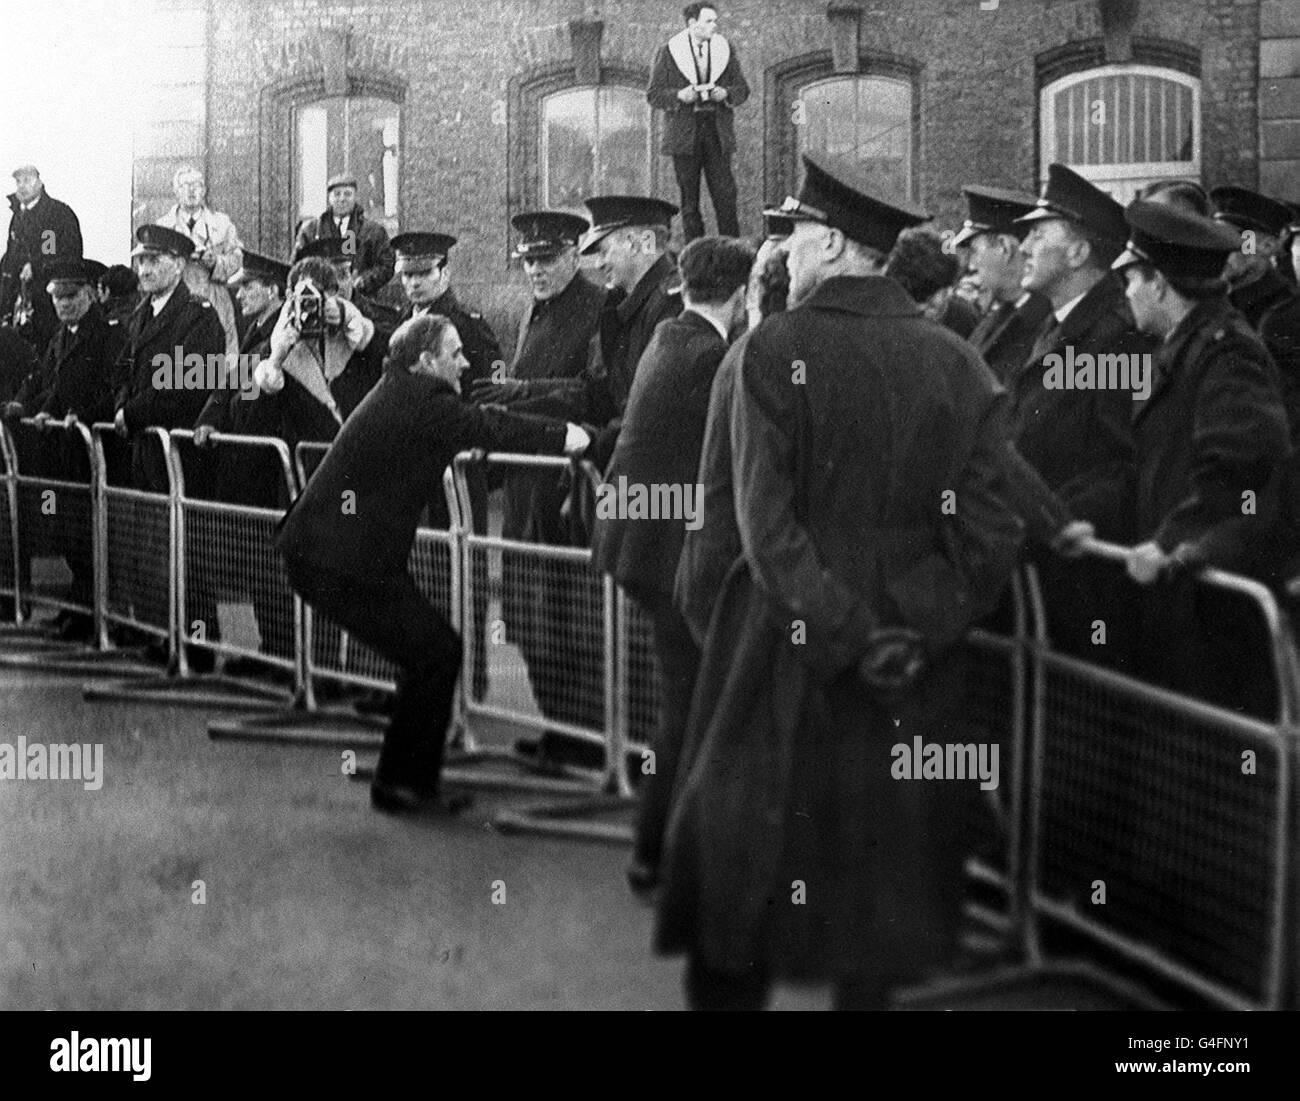 PA News Foto 17/11/68 la escena de Londonderry EN IRLANDA DEL NORTE DURANTE LAS MANIFESTACIONES DE DERECHOS CIVILES Foto de stock